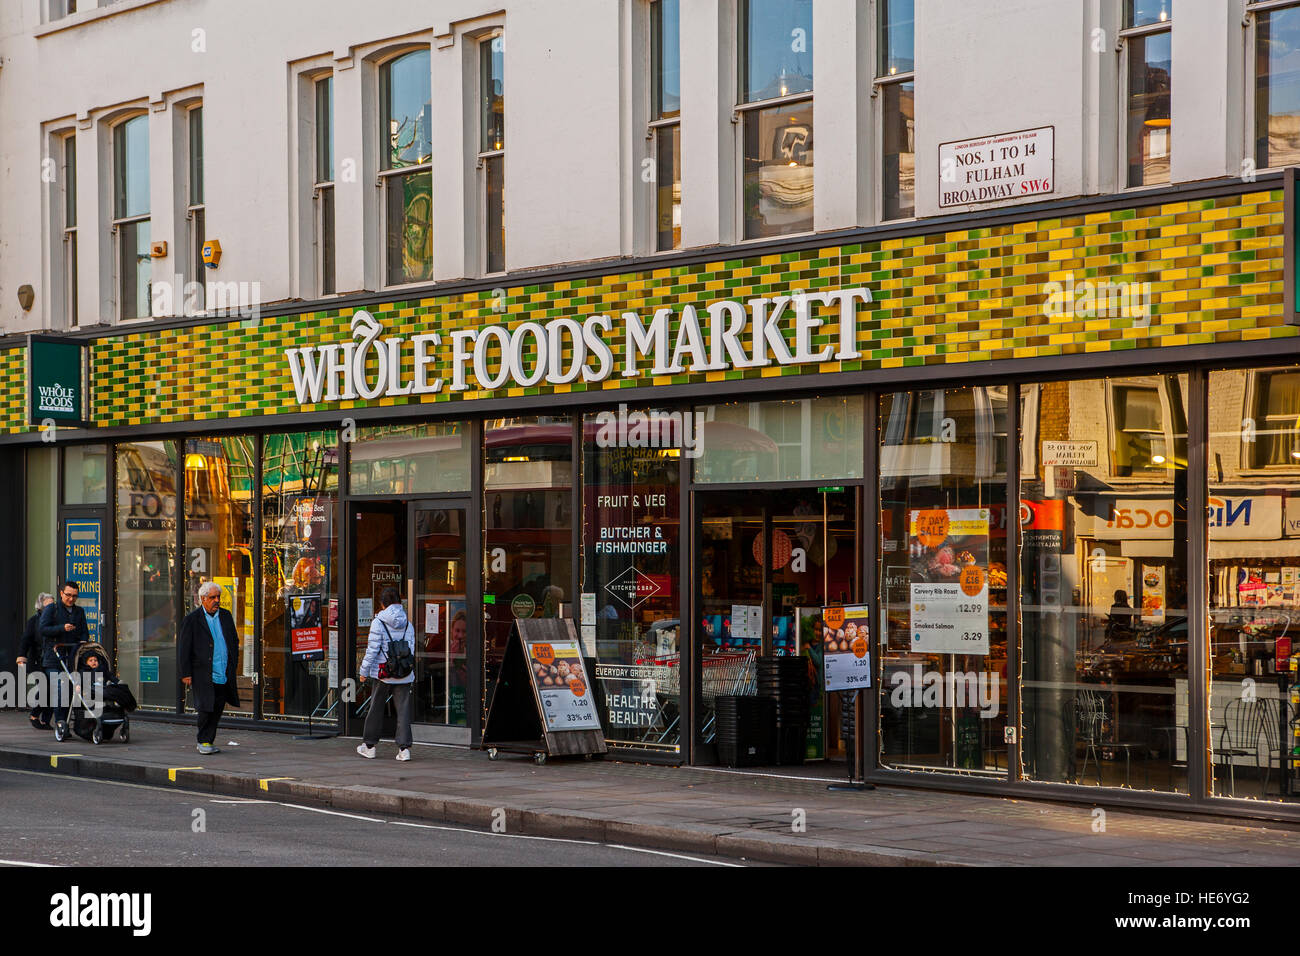 Whole Foods Market, Fulham, London Stock Photo